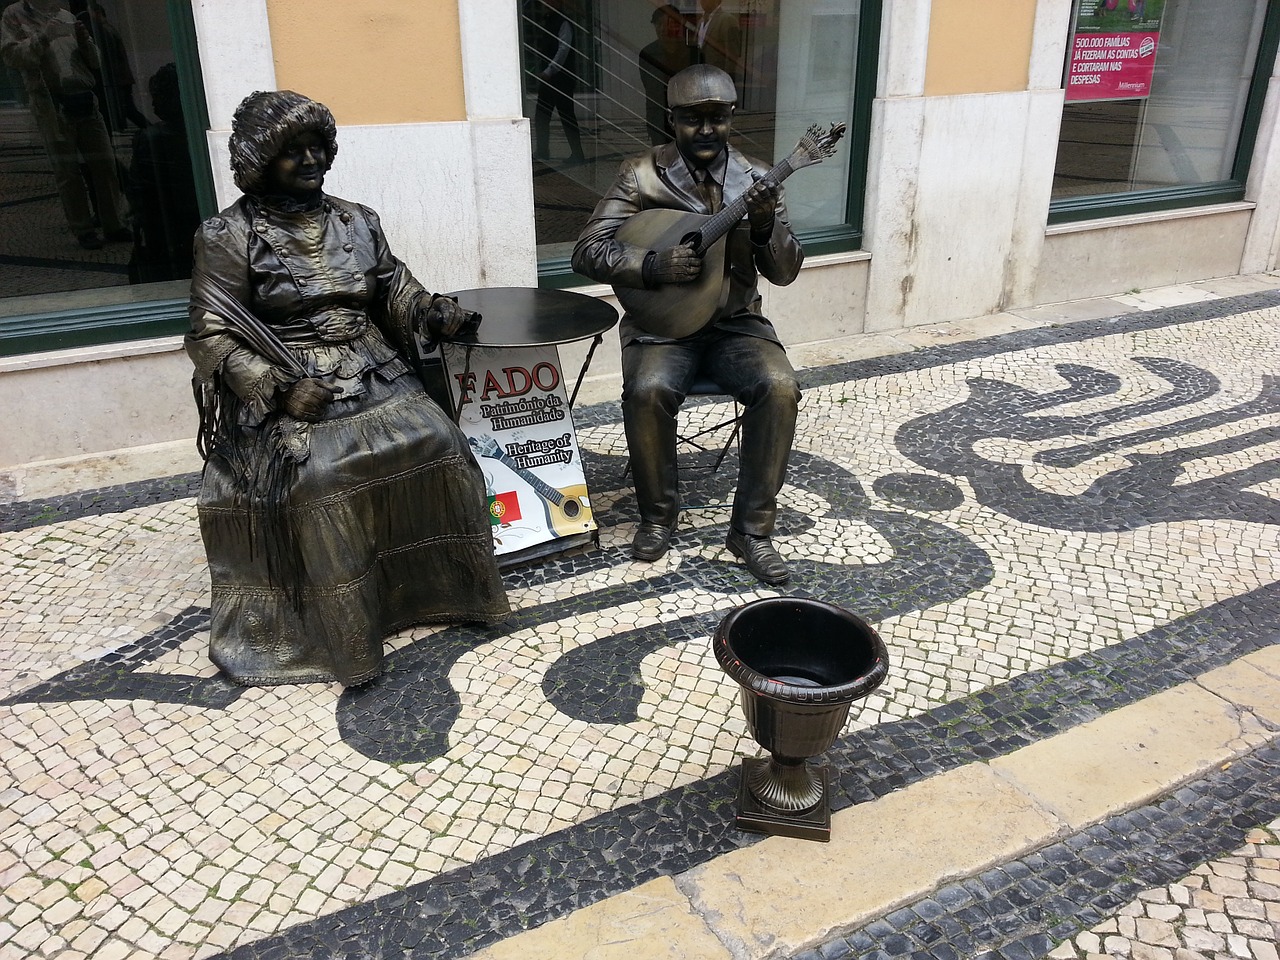 La qualité de vie au Portugal